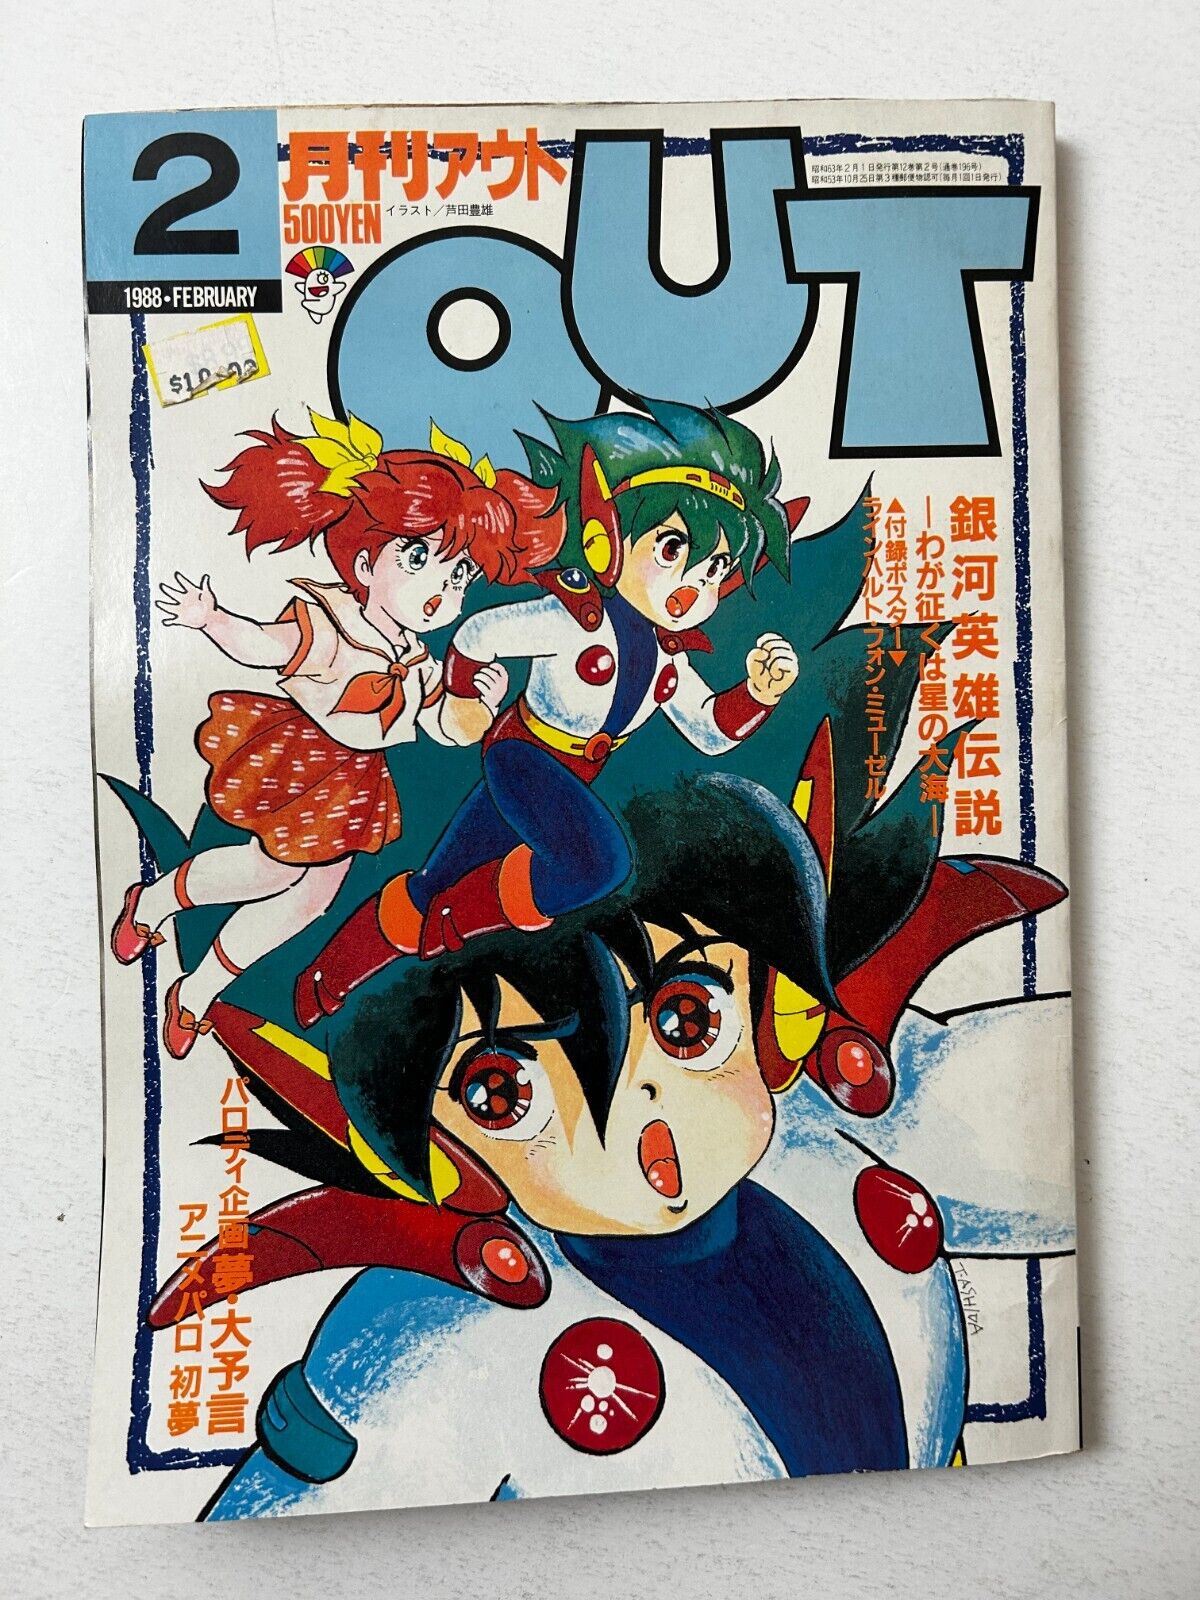 MONTHLY OUT February 1988 Anime Manga Comic Magazine Japan Japanese